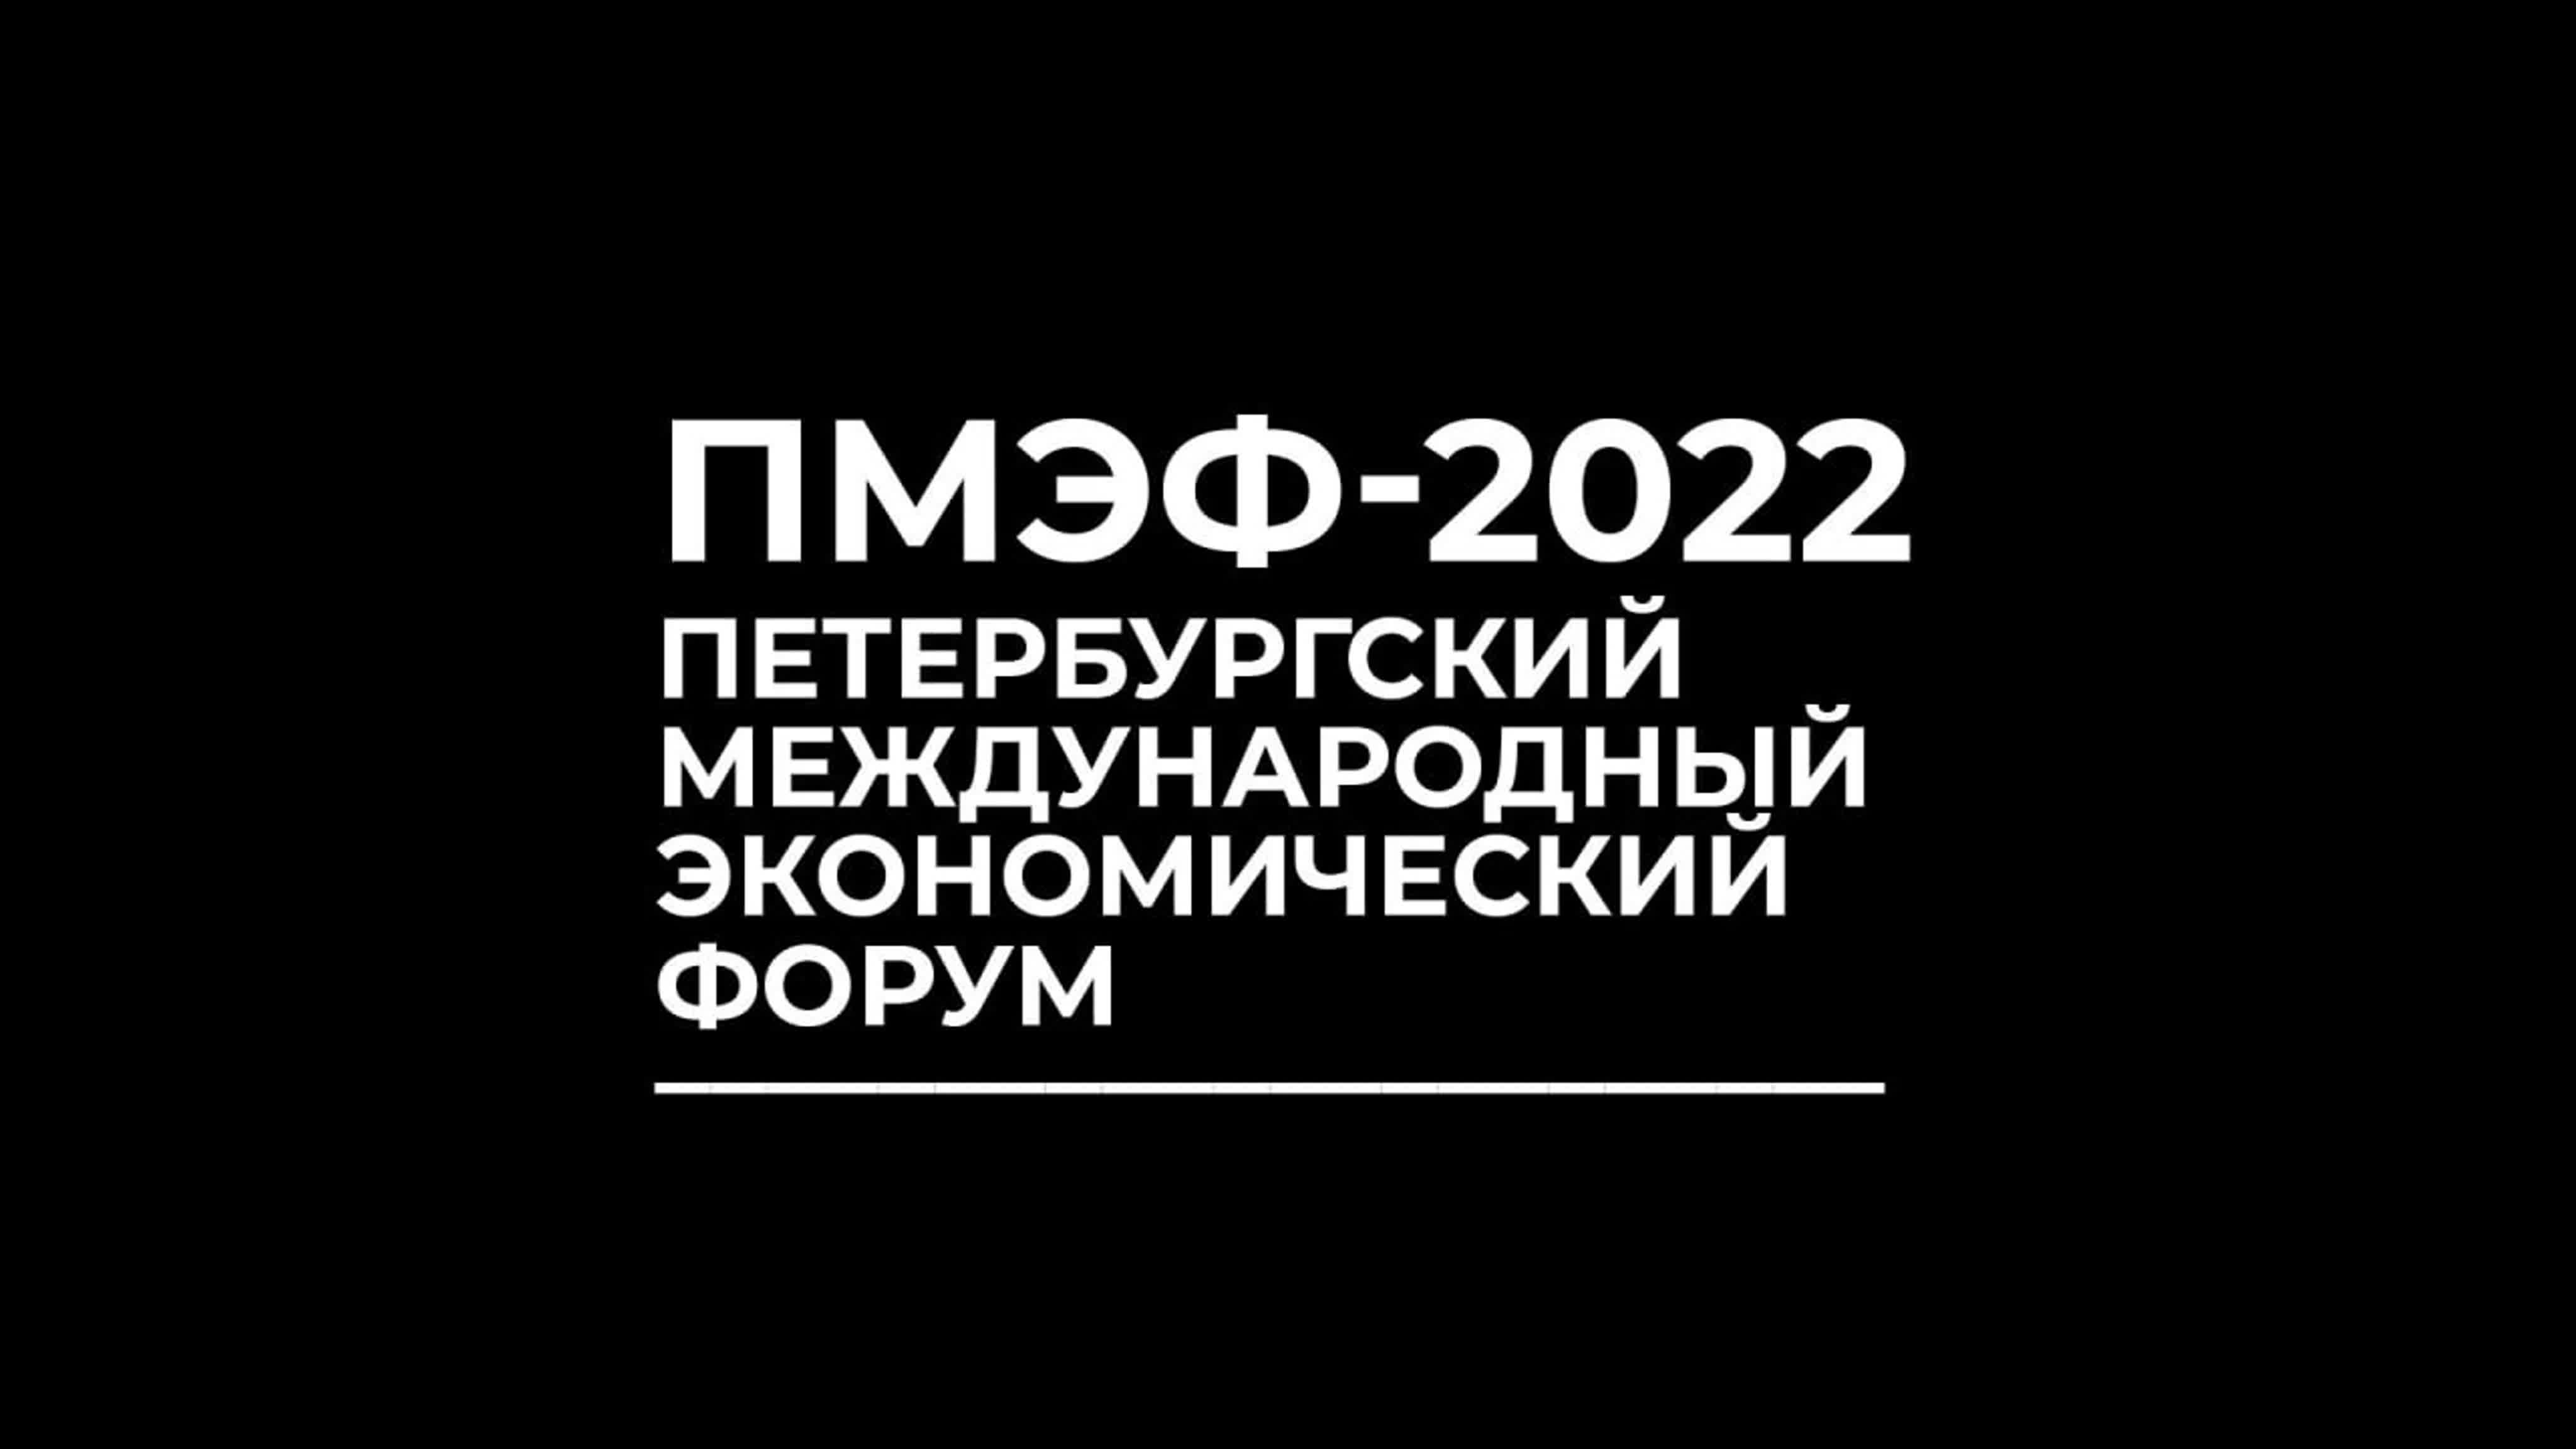 ПМЭФ-2022